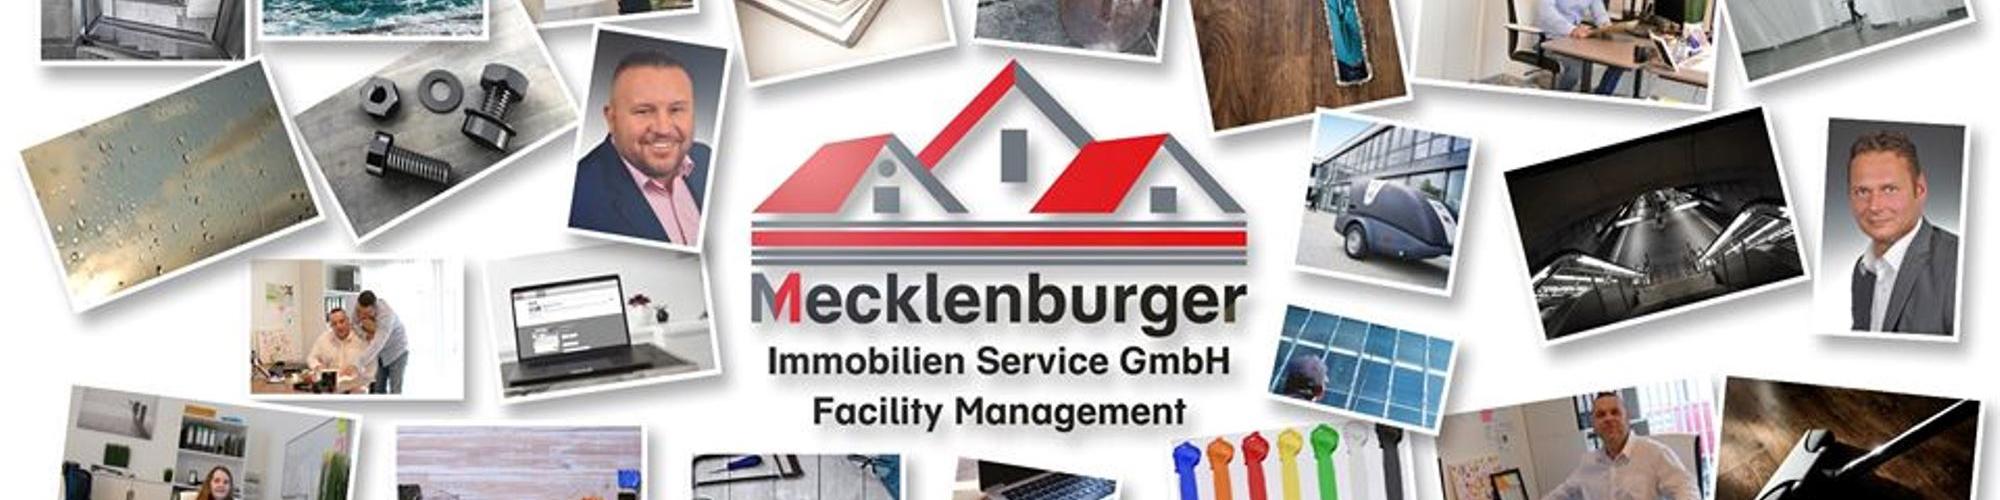 MIS Mecklenburger Immobilien Service GmbH